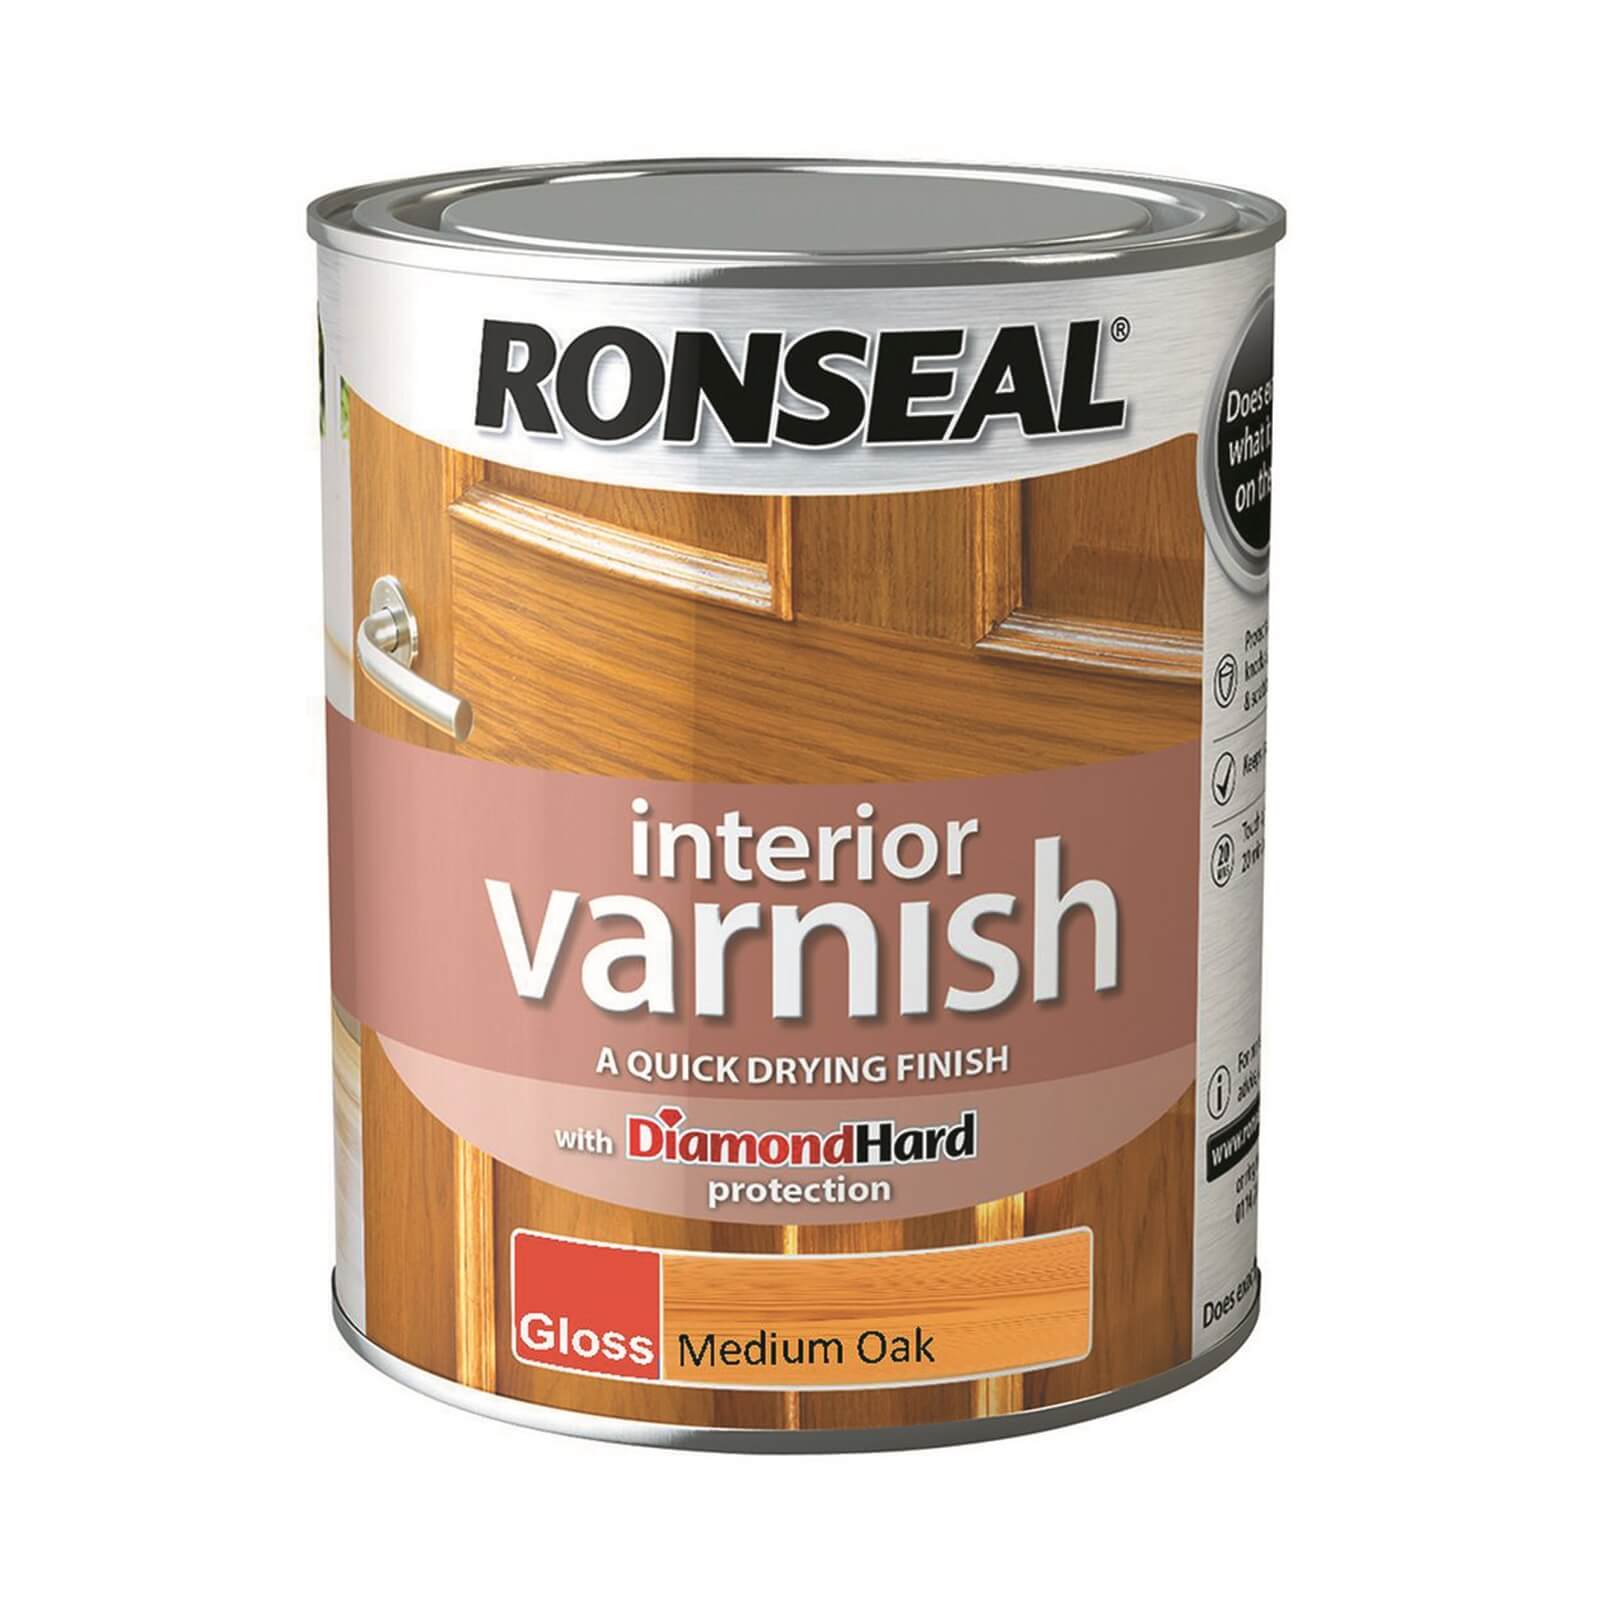 Ronseal Interior Varnish Gloss Medium Oak - 750ml